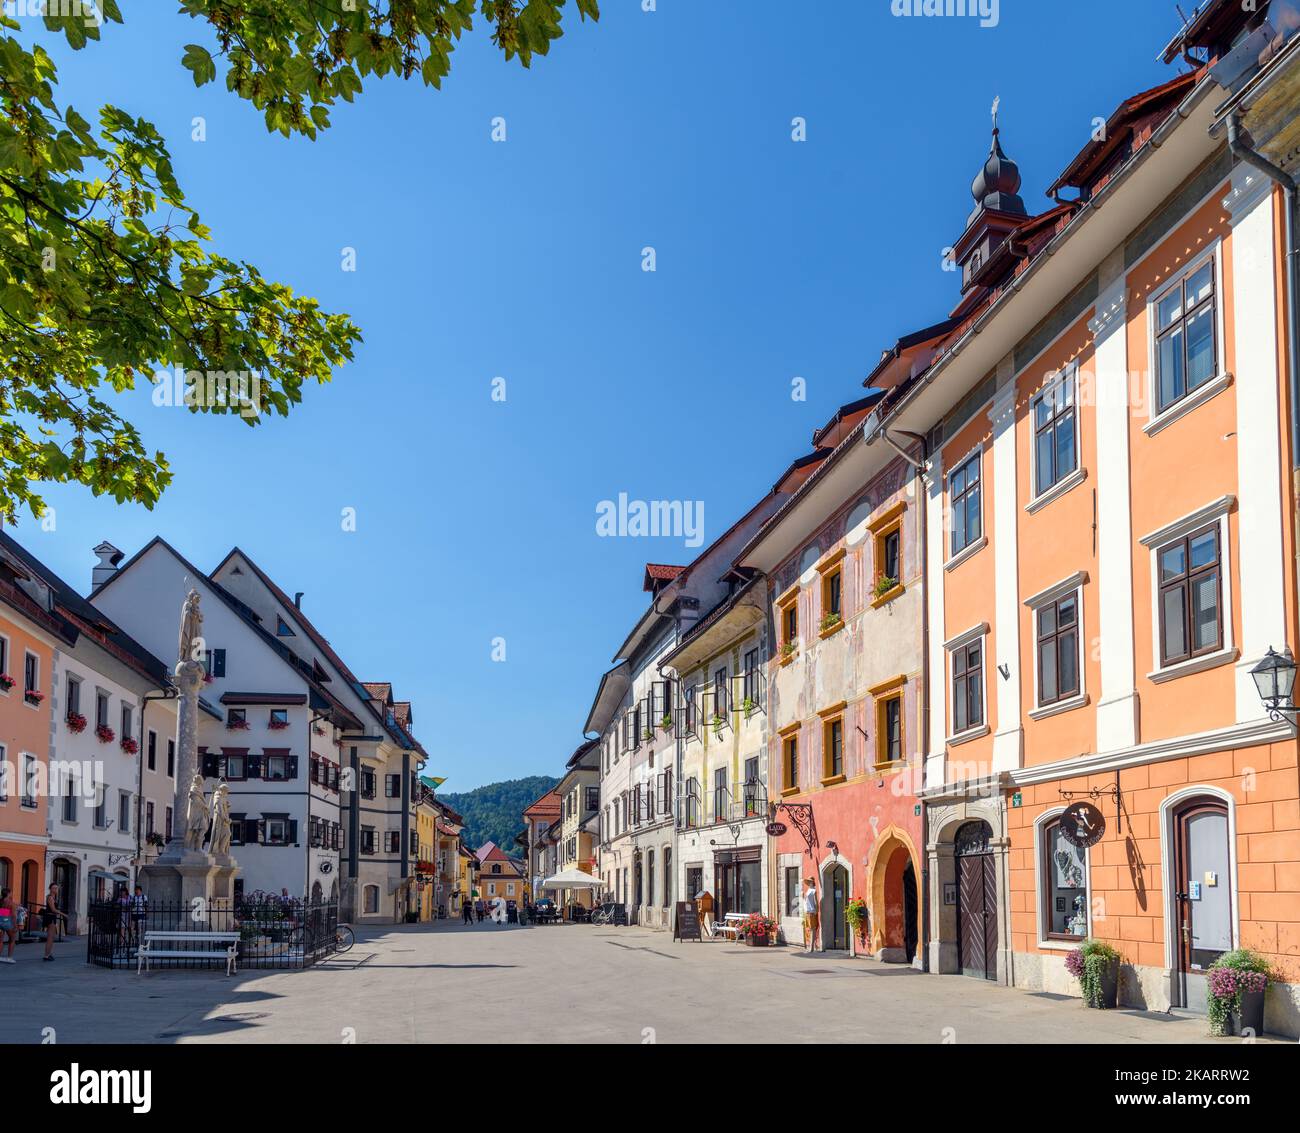 Mestni Trg (Town Square) in the historic old town of Skofja Loka, Slovenia Stock Photo